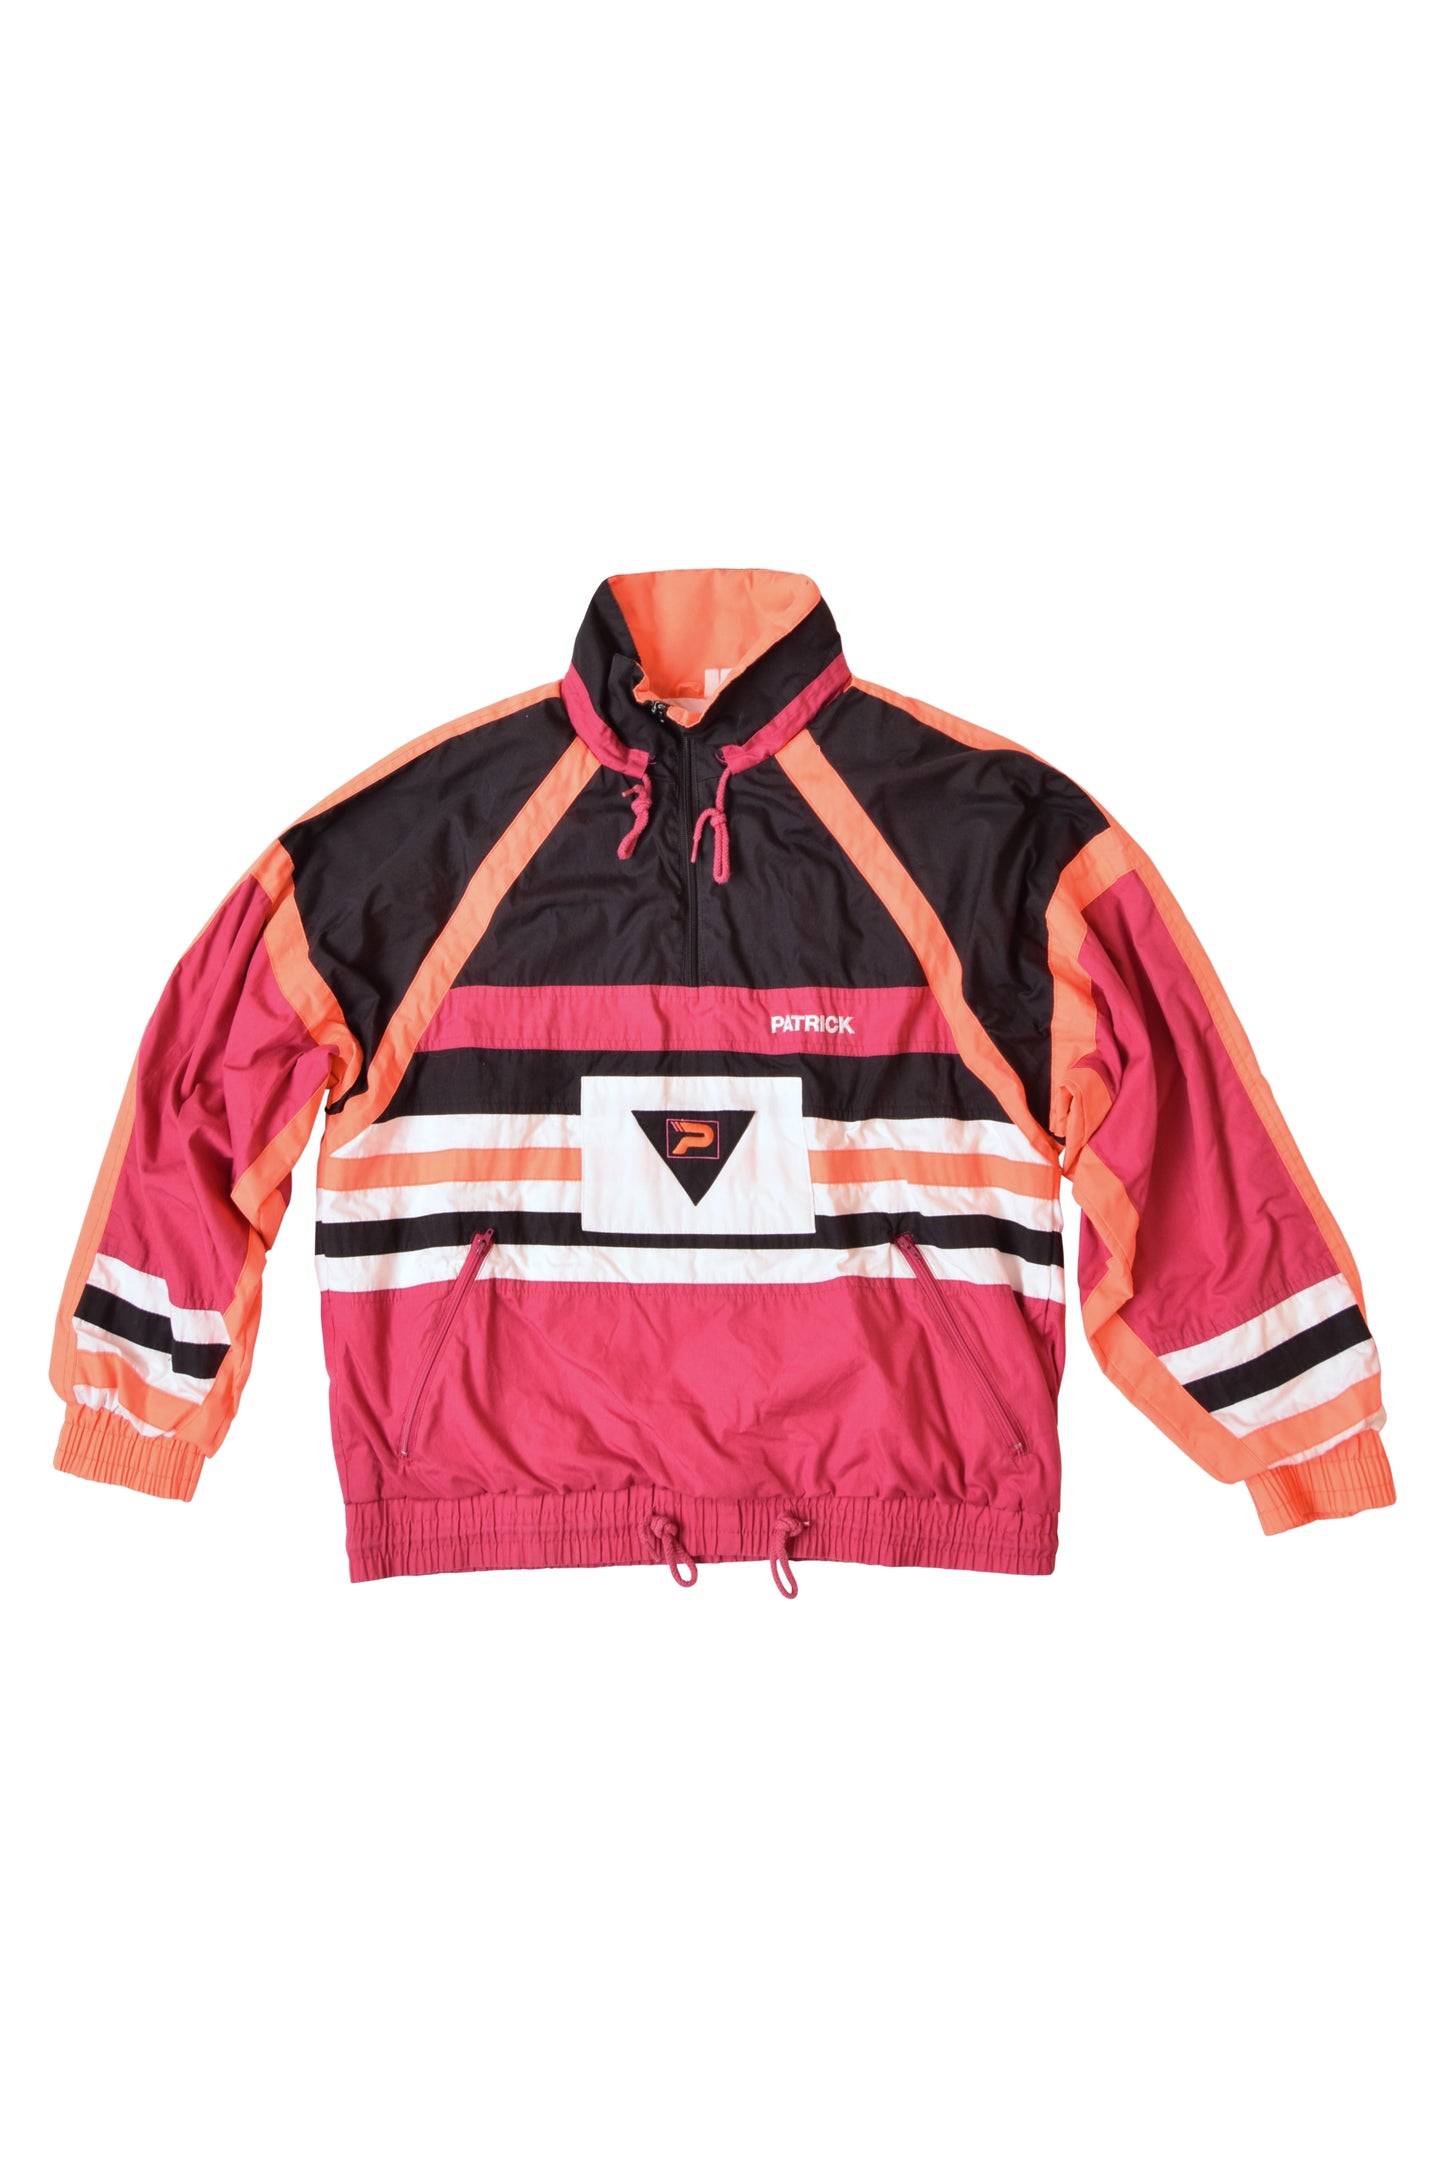 Vintage Patrick 90's Jacket Size M